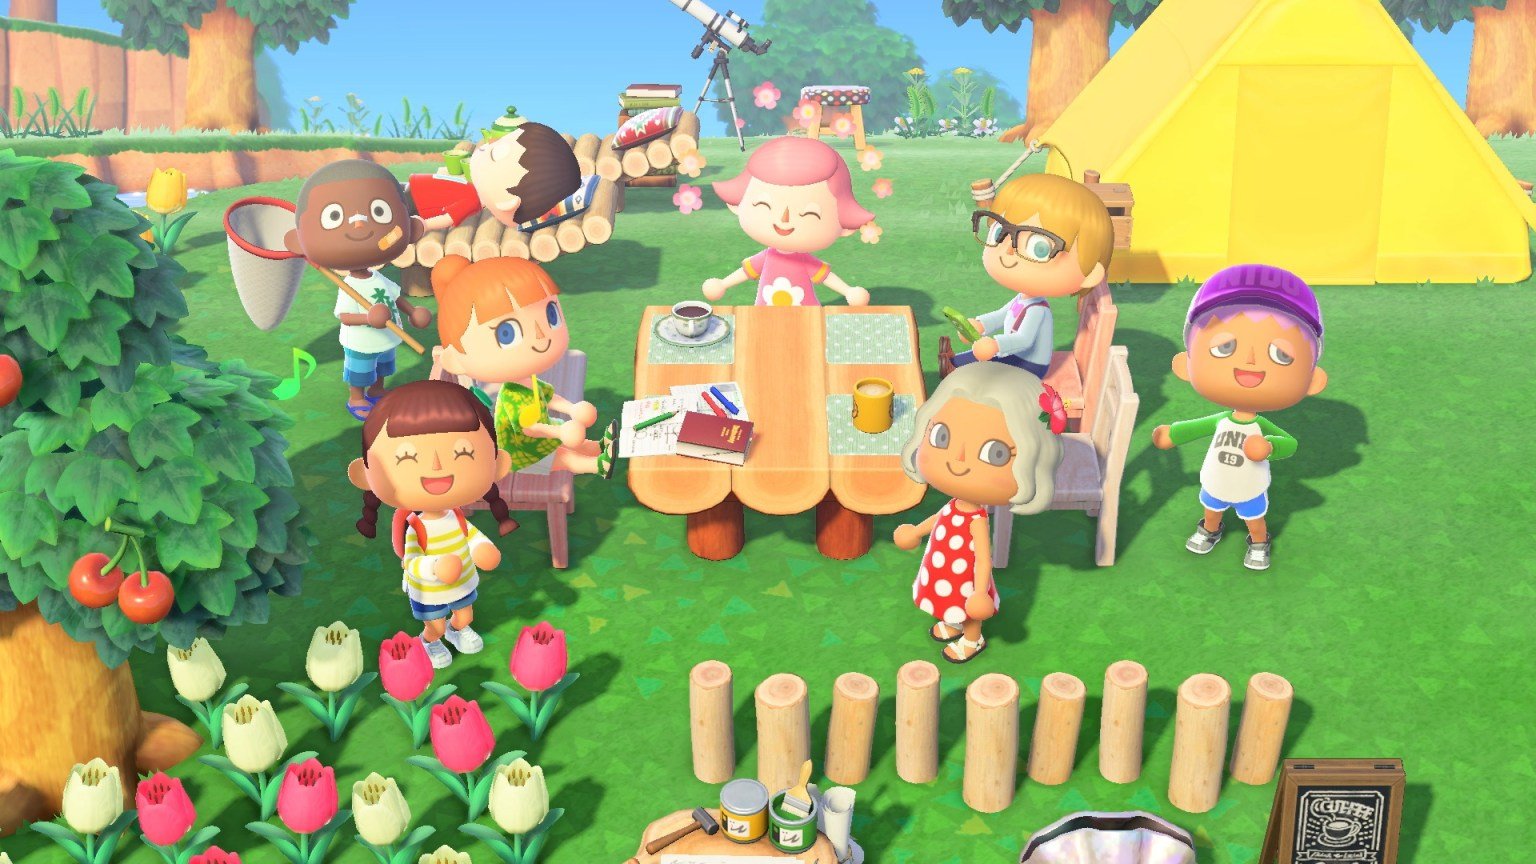 Анонс следующего обновления для игры Animal Crossing: New Horizons состоится 15 октября